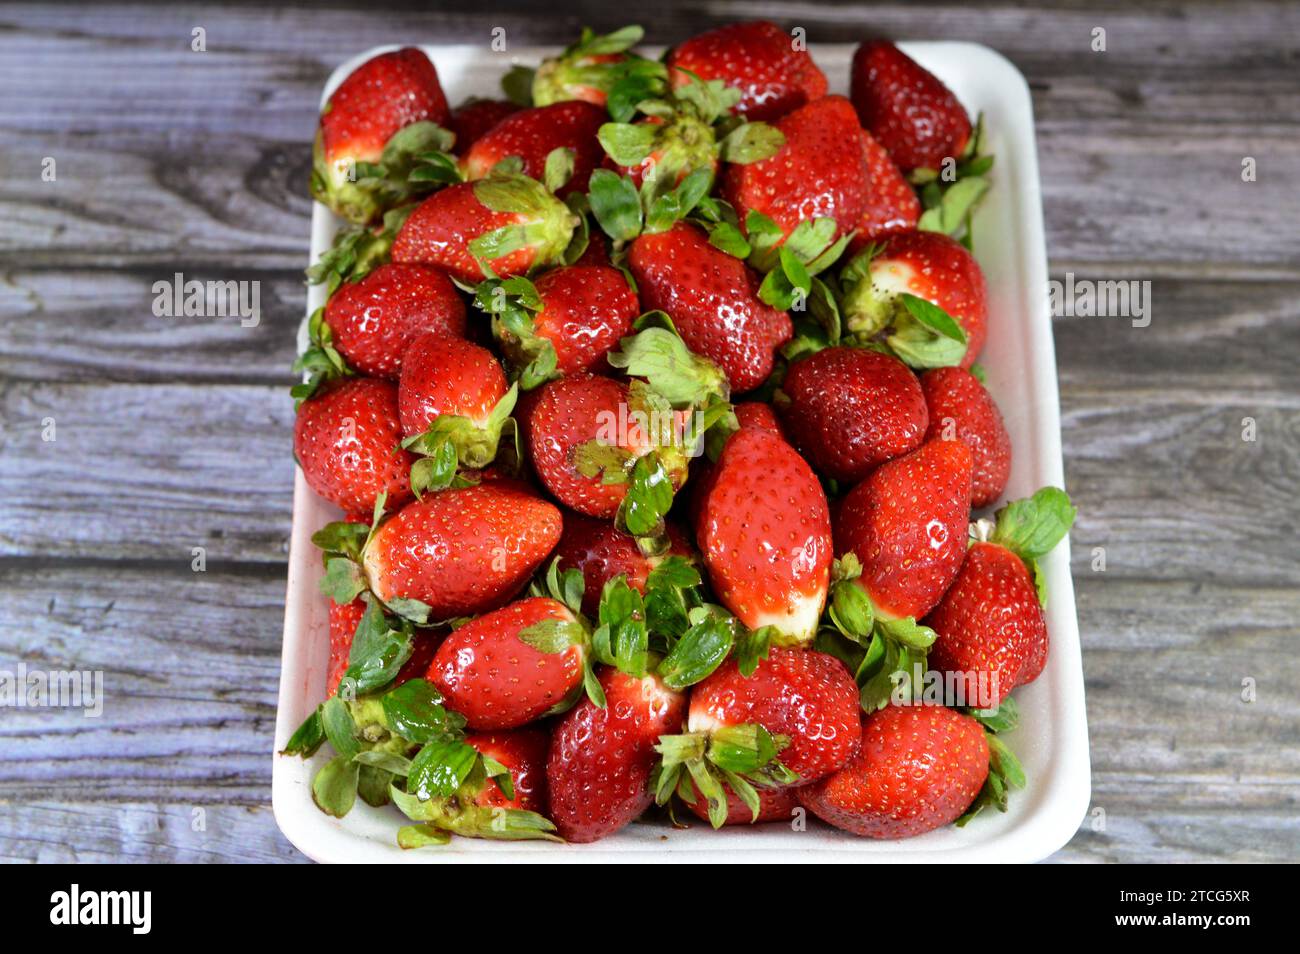 Haufen frischer Erdbeeren, die Gartenerdbeere ist eine weit verbreitete Hybridart der Gattung Fragaria ananassa mit ihrem charakteristischen Aroma, Stockfoto